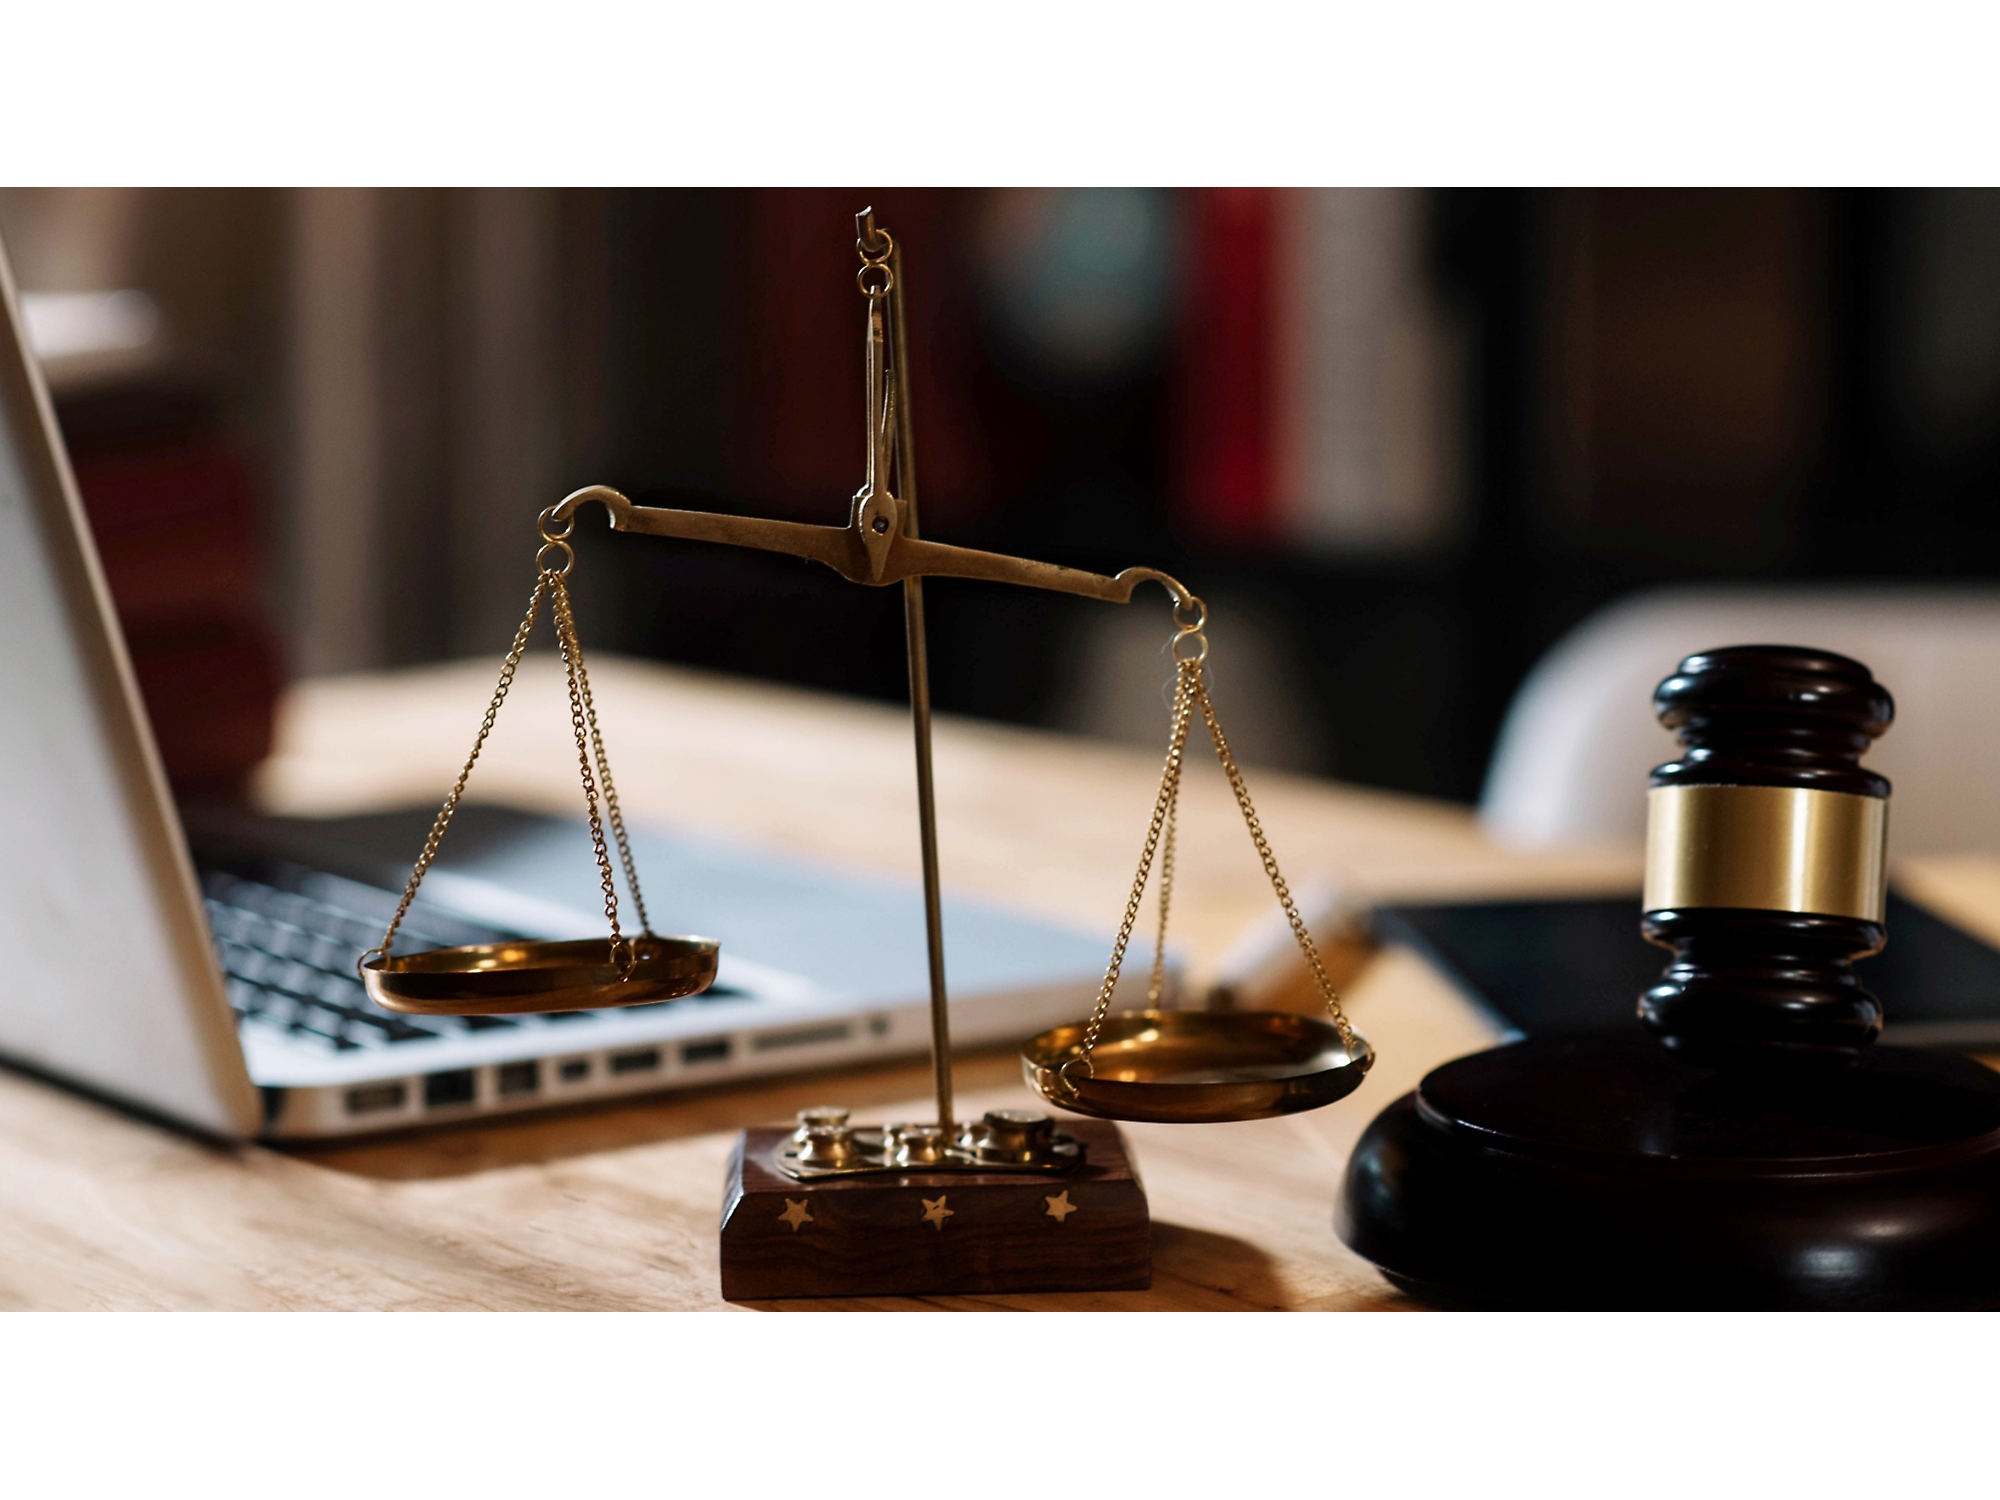 Ένα ξύλινο σφυρί δικαστή και μια ζυγαριά σε ένα γραφείο, με έναν φορητό υπολογιστή στο παρασκήνιο, που συμβολίζει τη δικαστική πρακτική σε ένα περιβάλλον γραφείου.